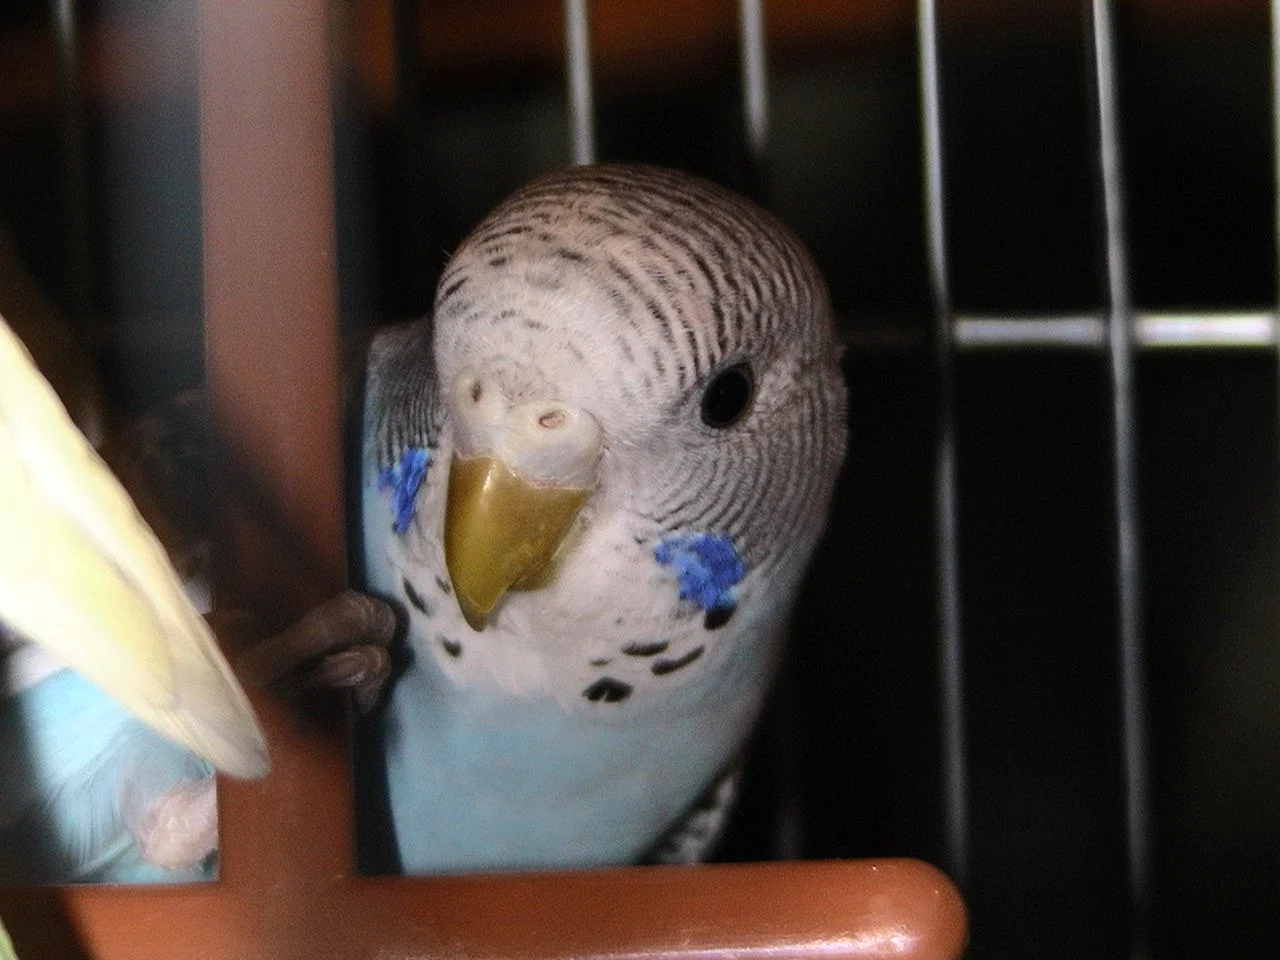 Восковица самки волнистого попугая